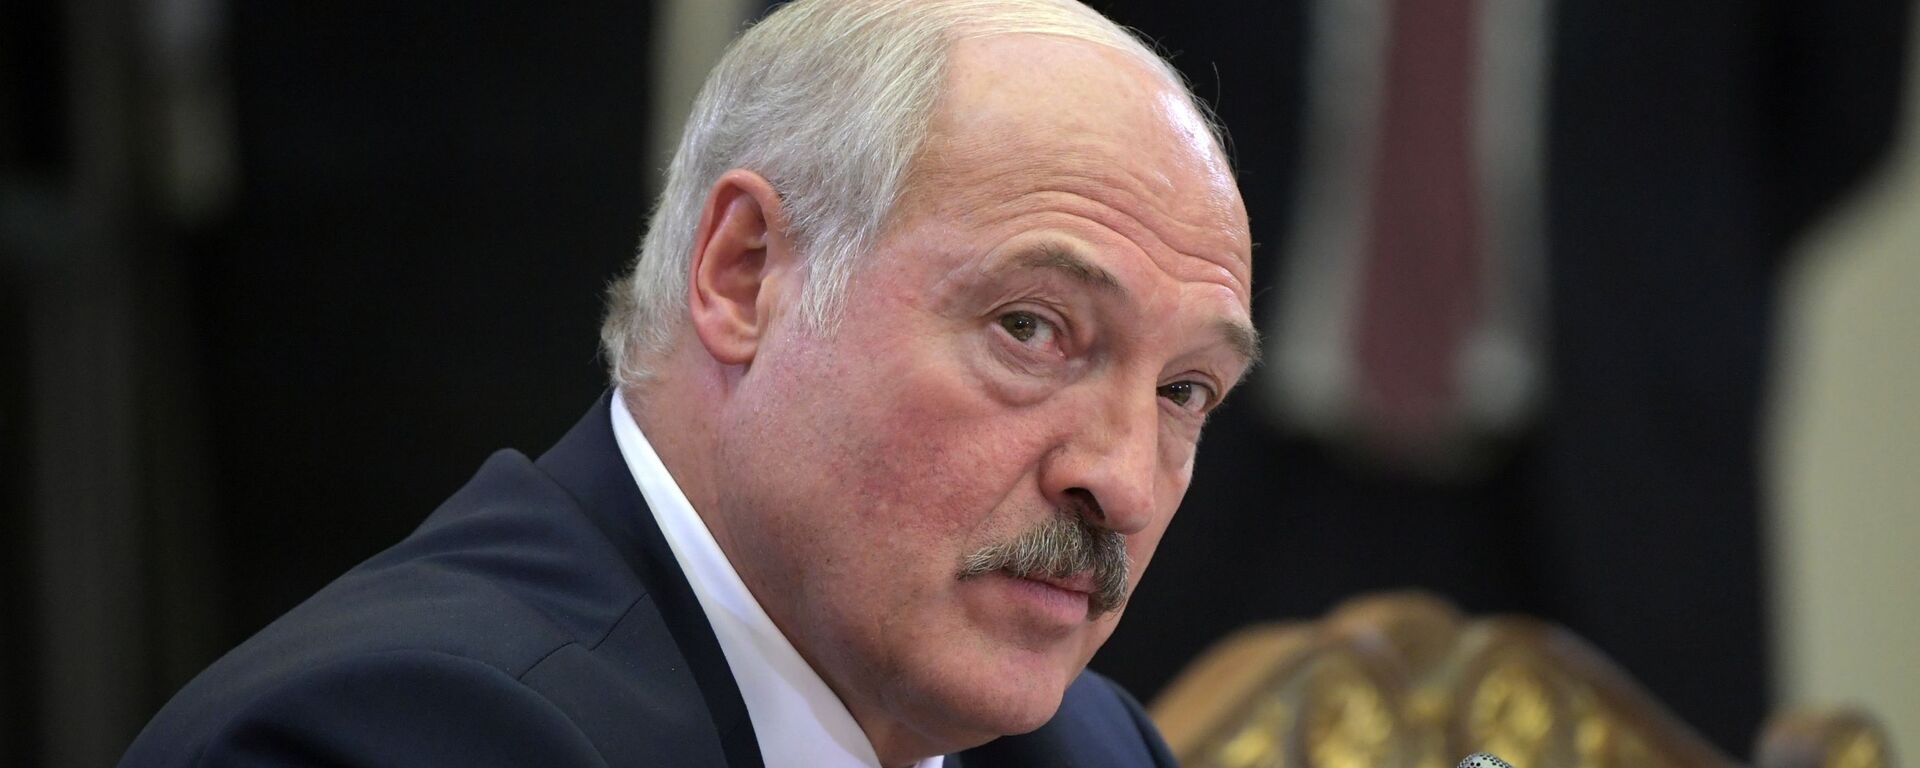 Alexandr Lukashenko, el presidente de Bielorrusia - Sputnik Mundo, 1920, 17.02.2022